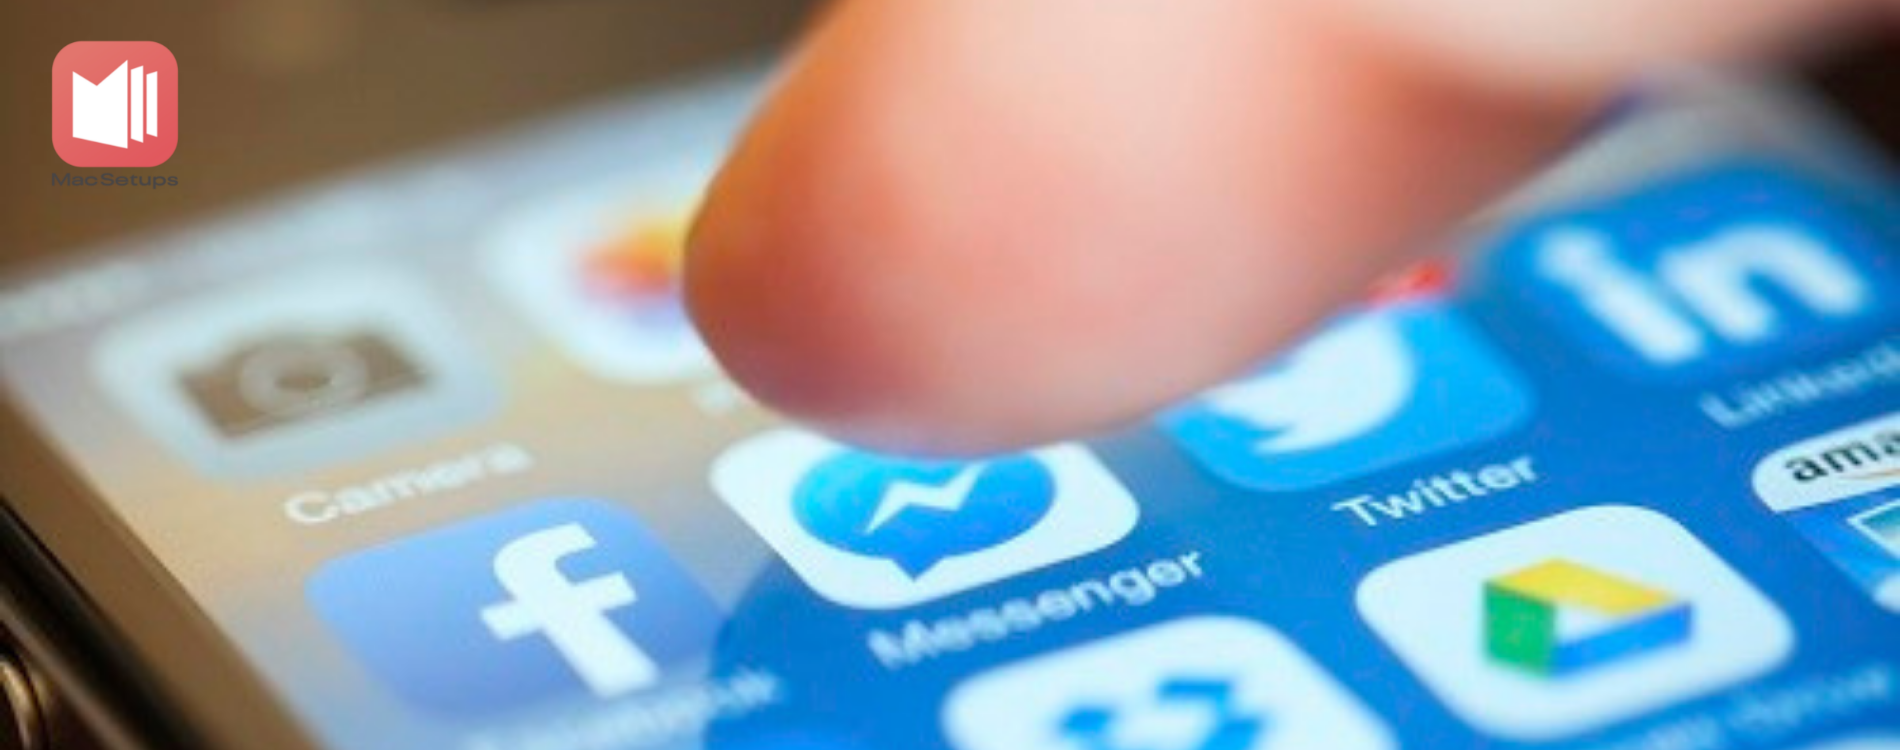 Facebook thử nghiệm gọi thoại, video không qua Messenger